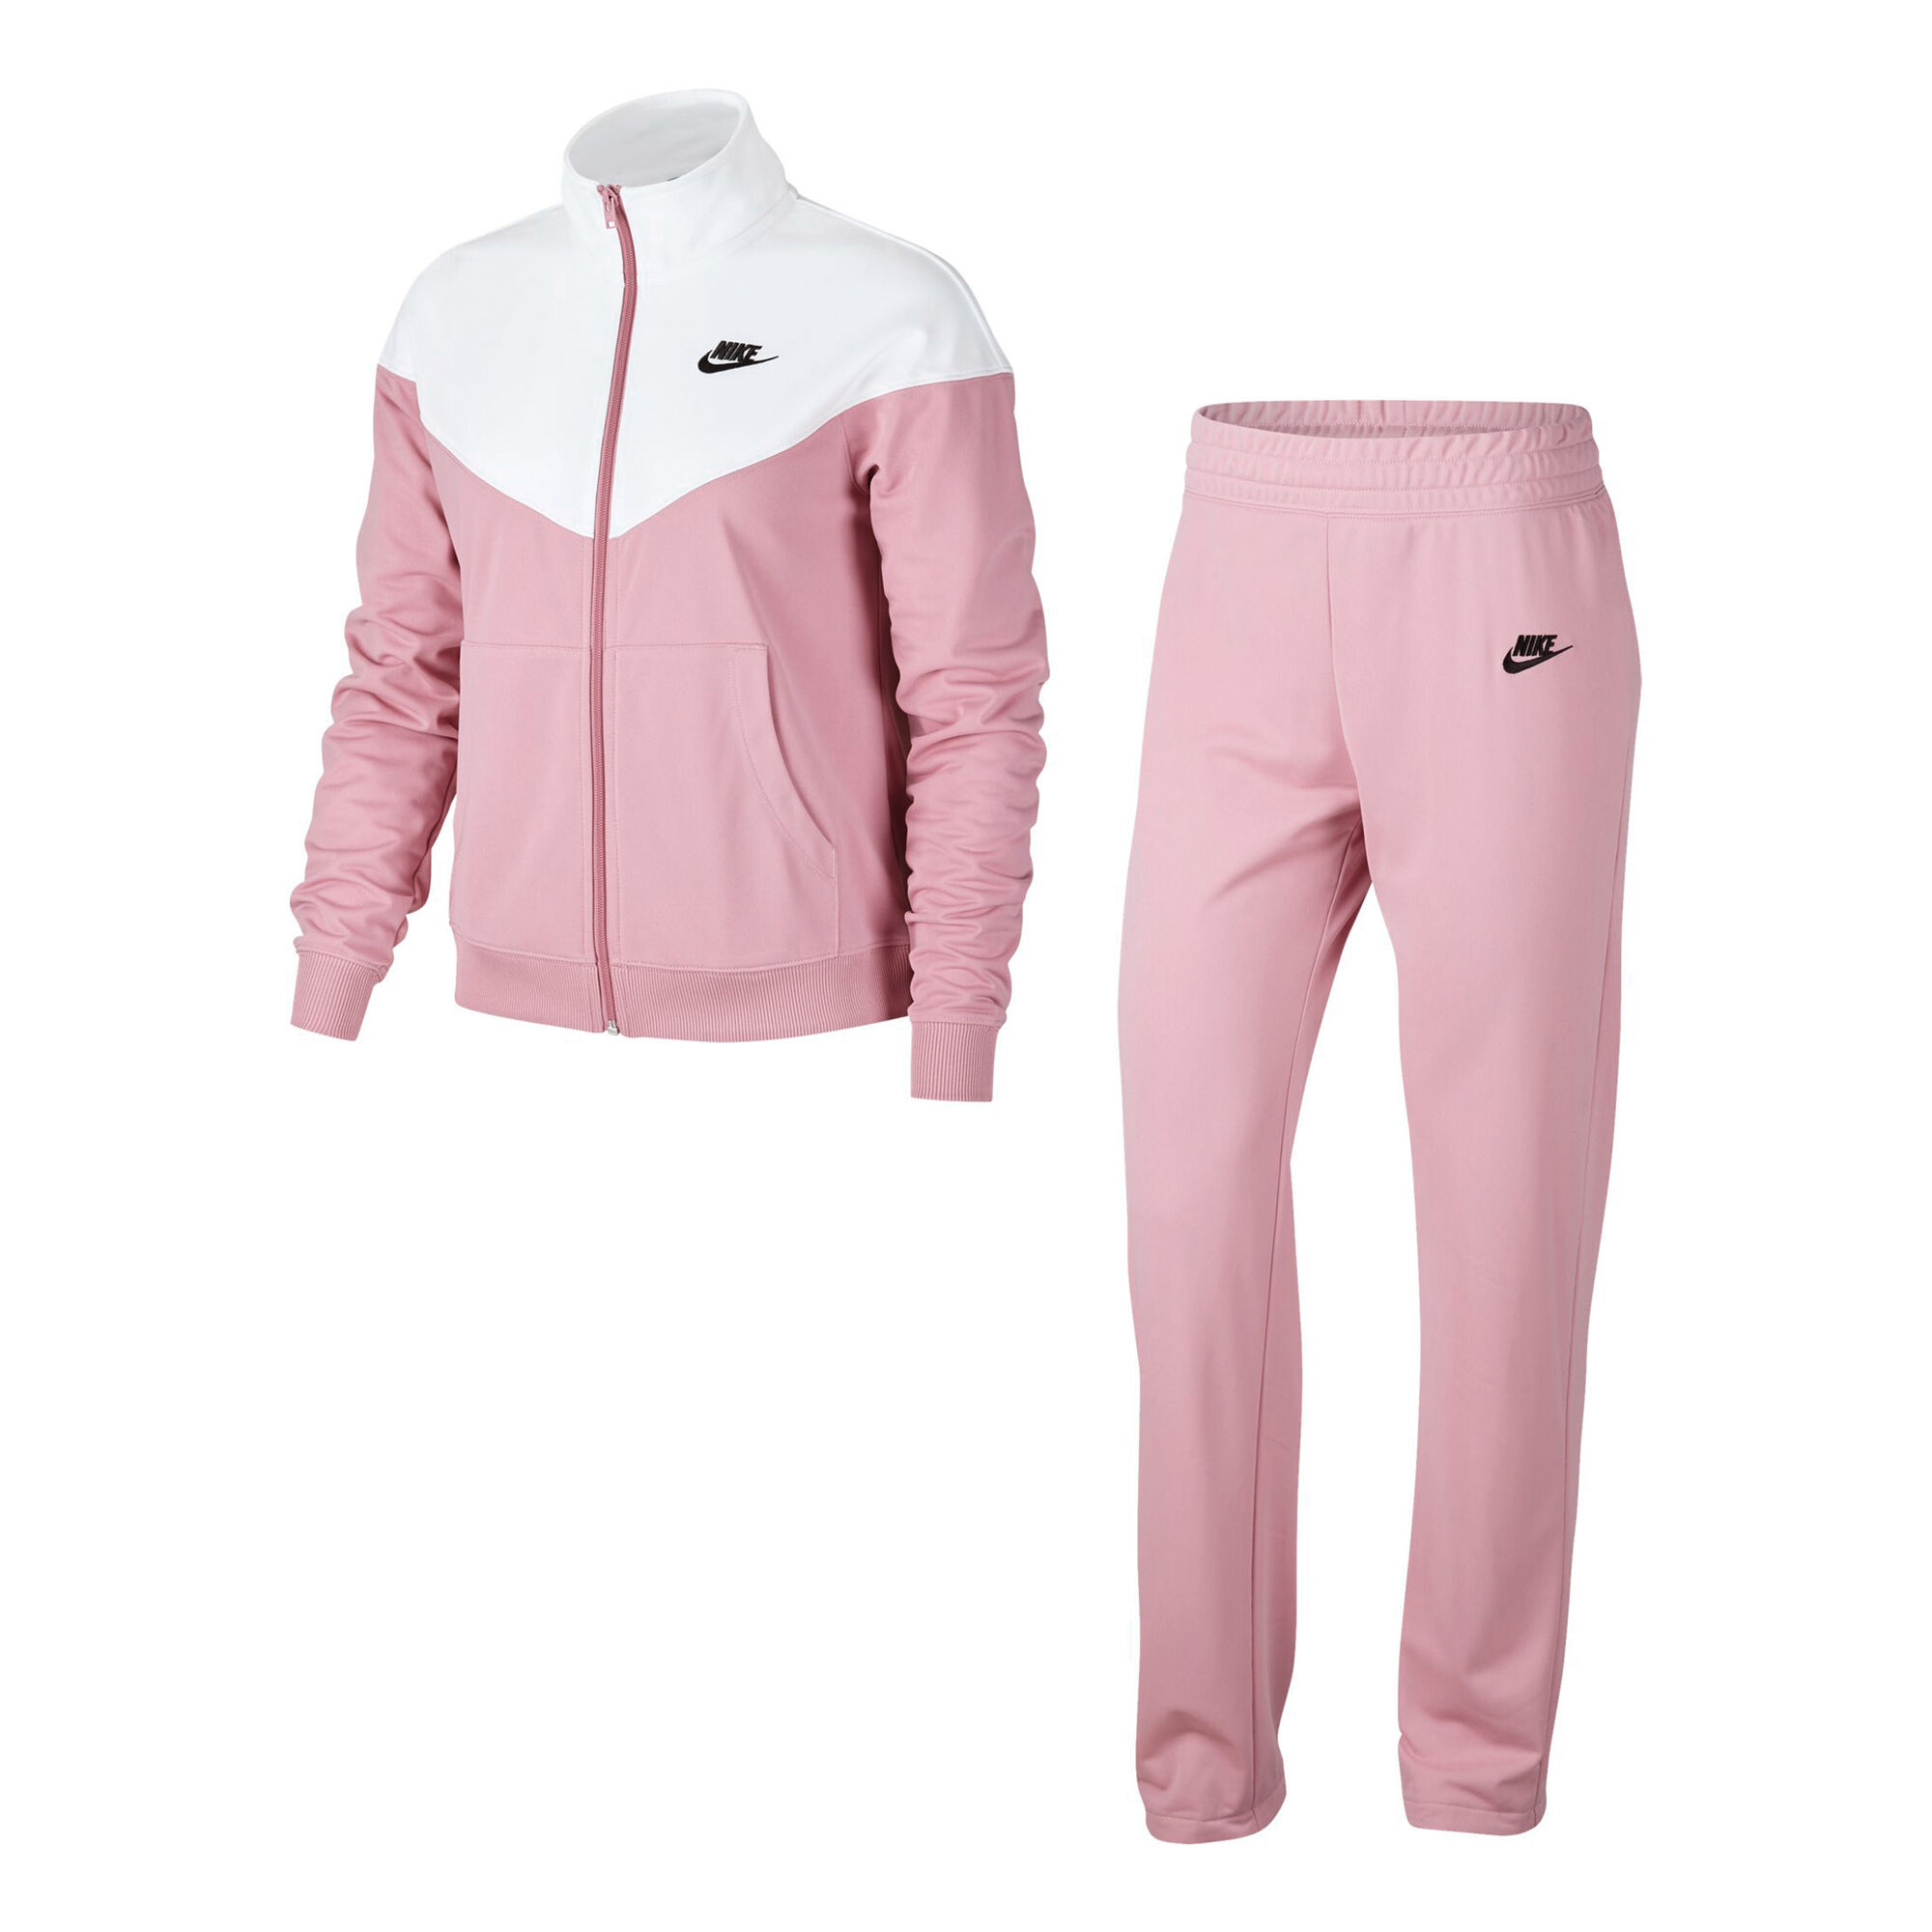 Nike Sportswear Trainingspak Dames - Roze, Wit online kopen | Tennis-Point